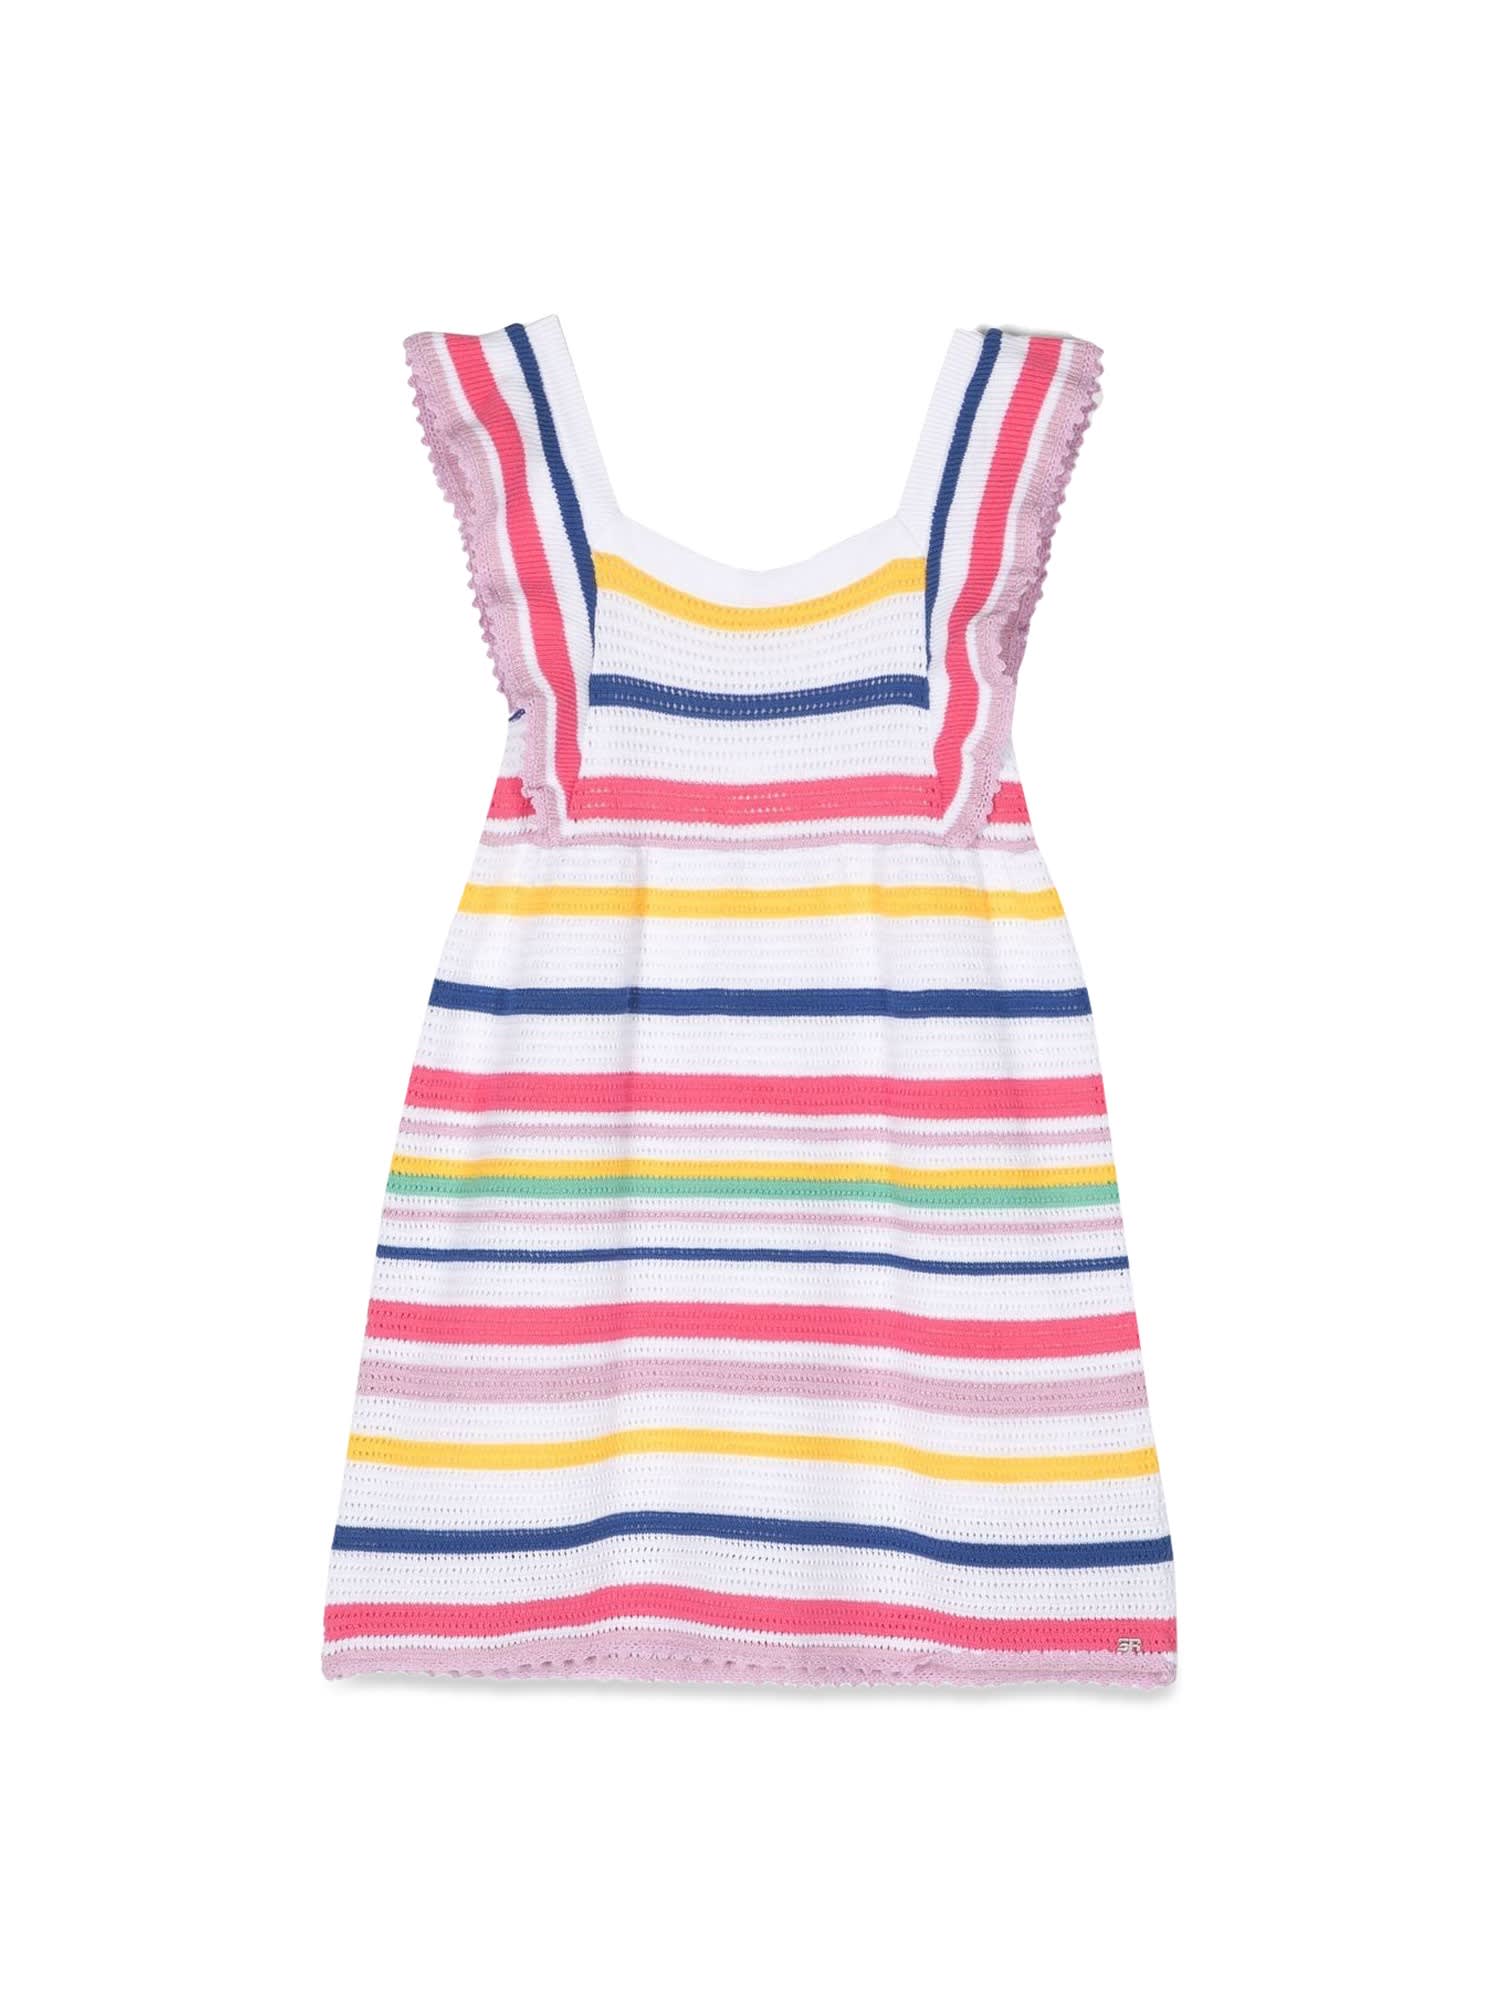 Sonia Rykiel Kids' Striped Knit Dress In Multicolor